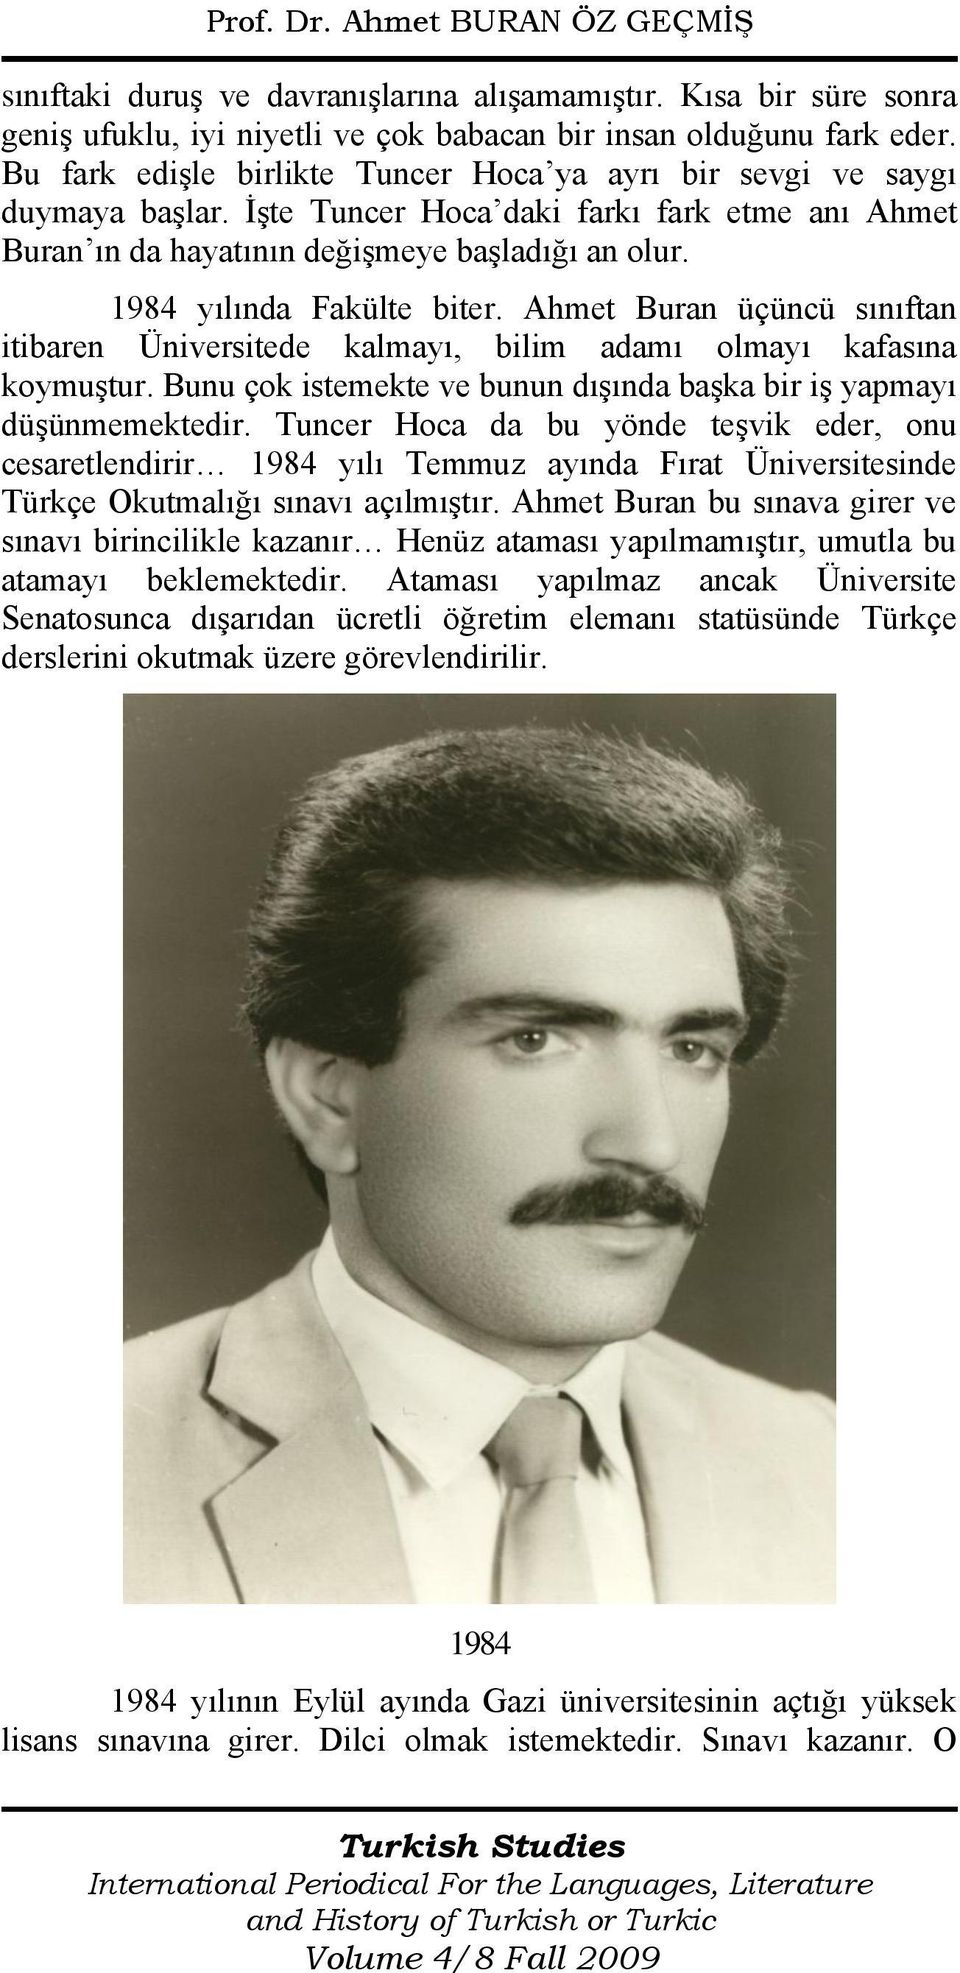 1984 yılında Fakülte biter. Ahmet Buran üçüncü sınıftan itibaren Üniversitede kalmayı, bilim adamı olmayı kafasına koymuştur. Bunu çok istemekte ve bunun dışında başka bir iş yapmayı düşünmemektedir.